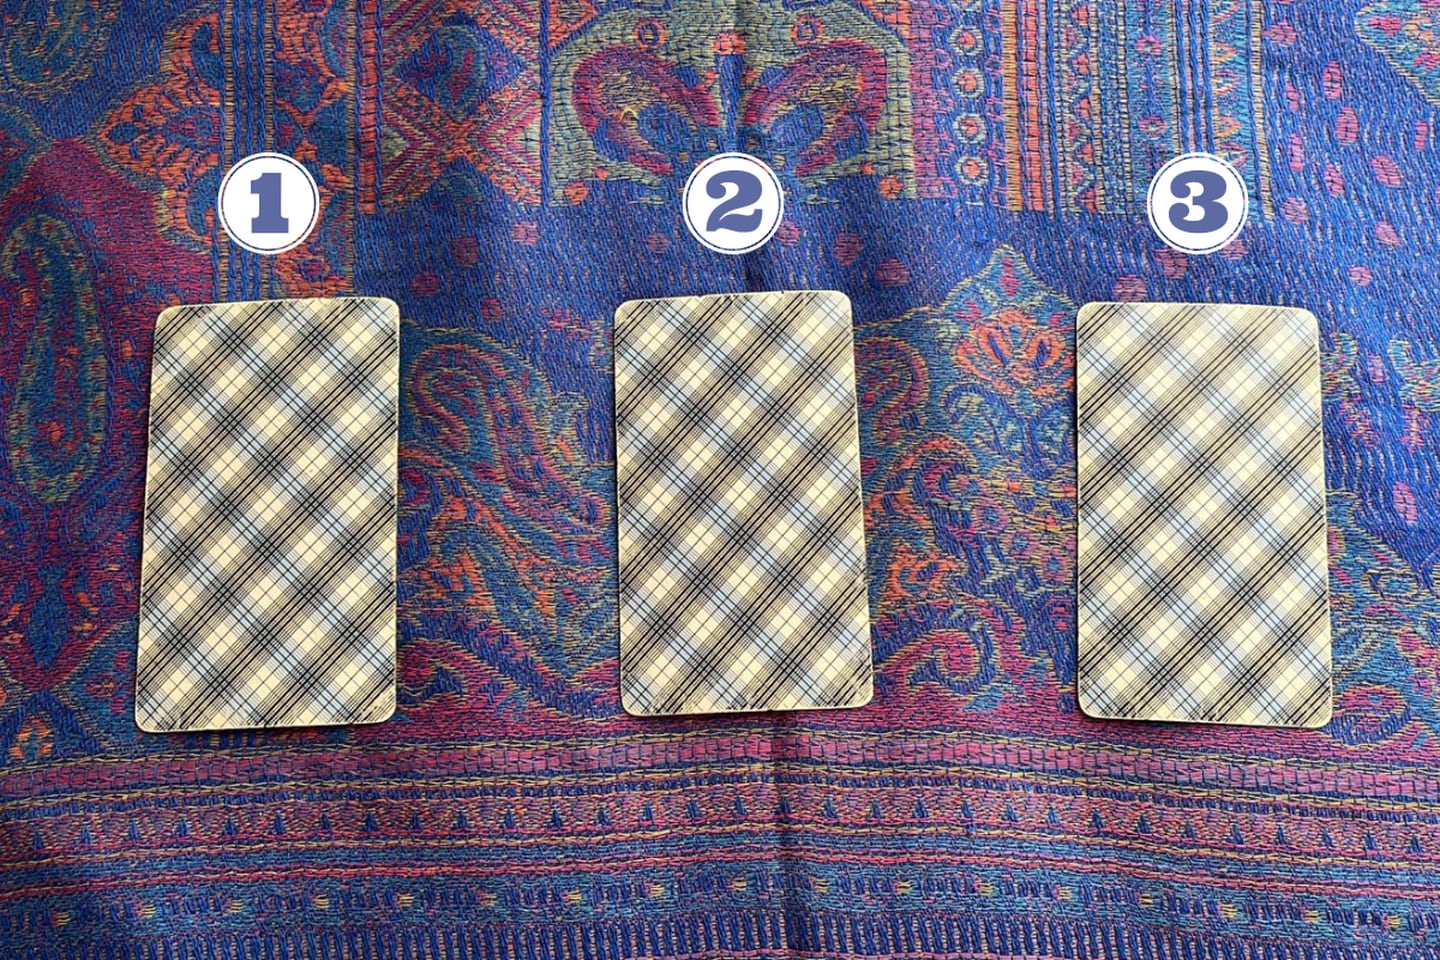 3 cartas del Tarot ocultas sobre una tela.